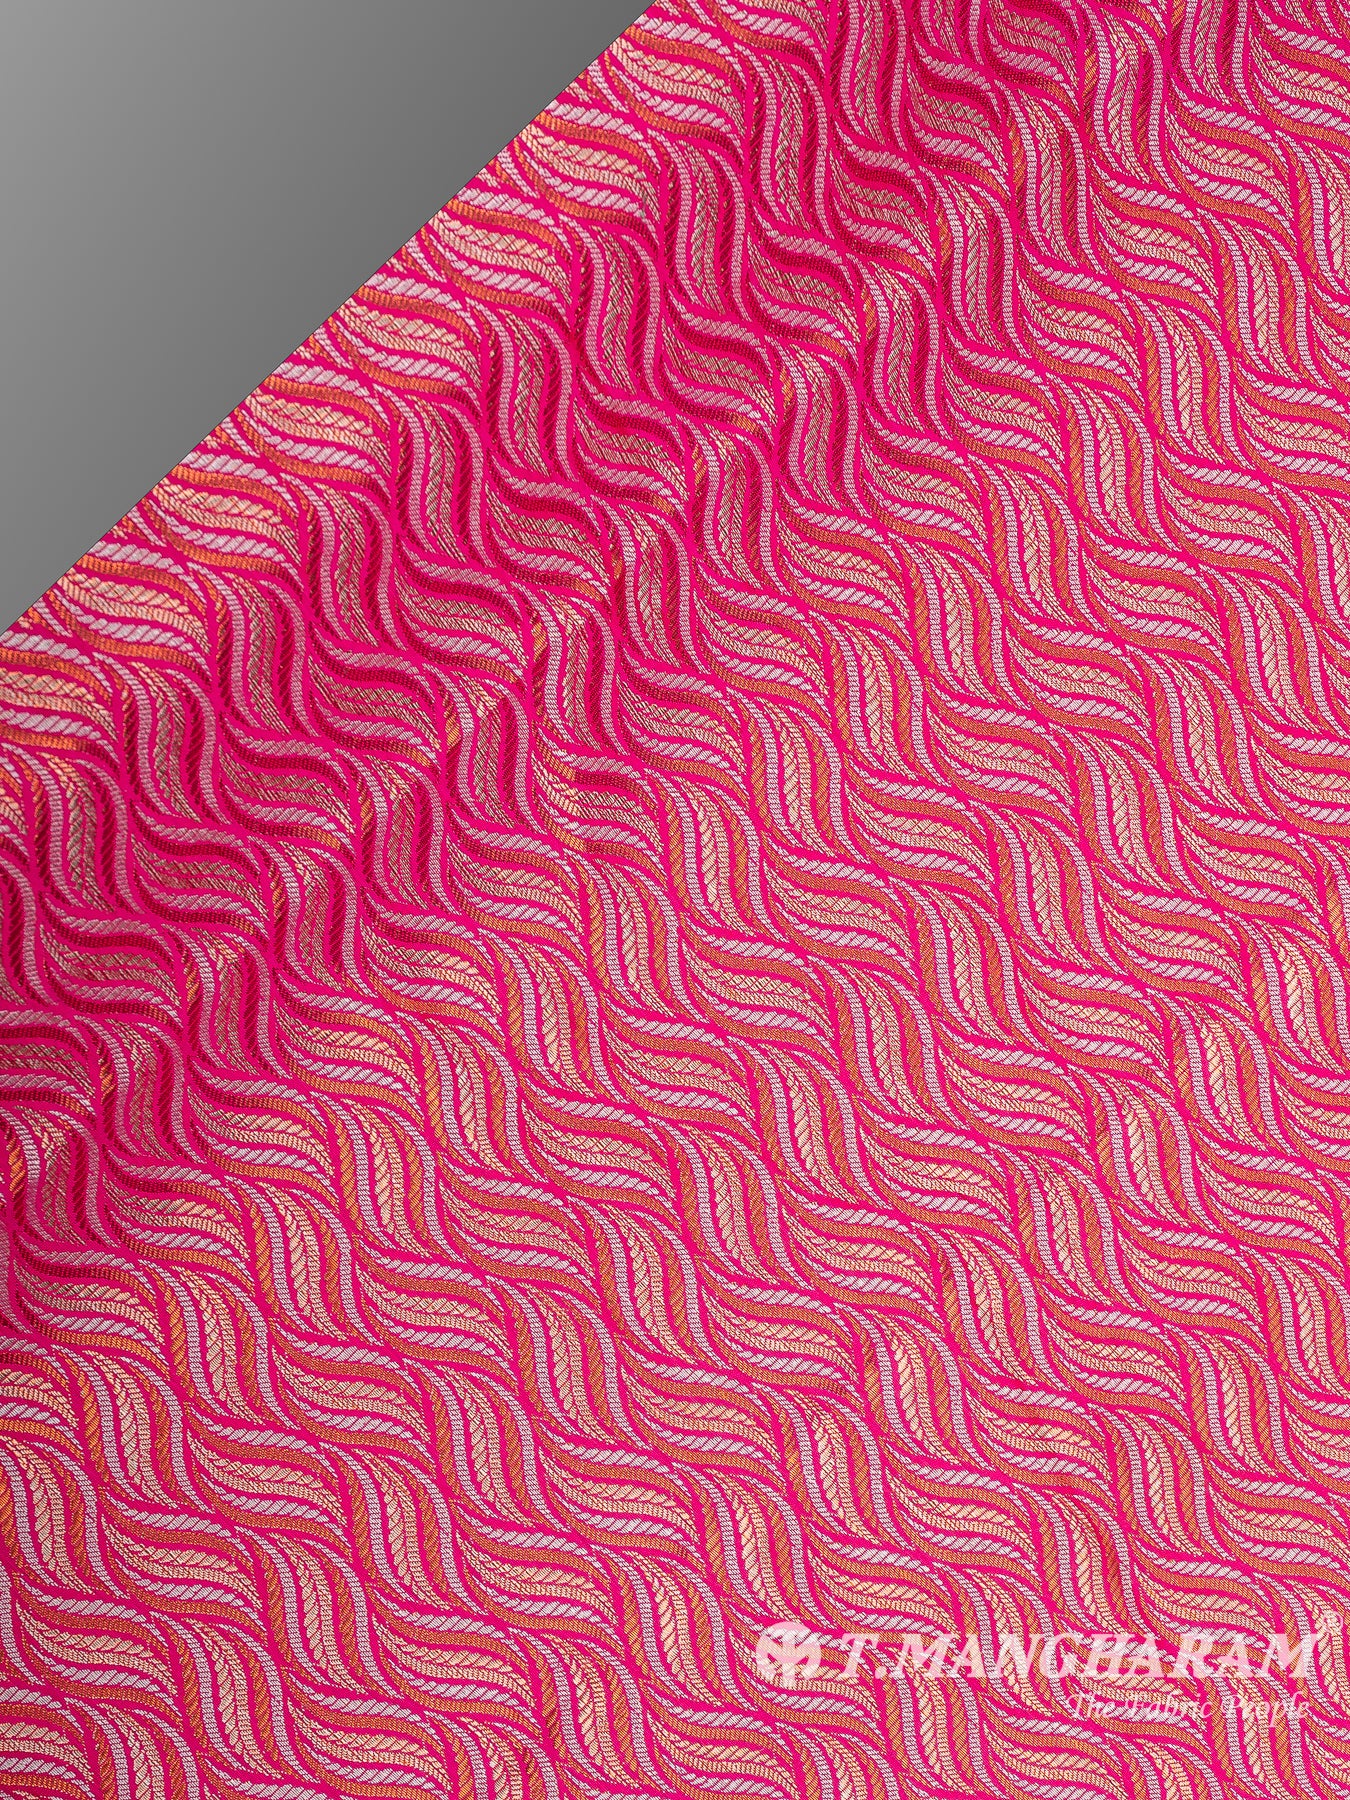 Multicolor Semi Banaras Fabric - EB6704 view-2